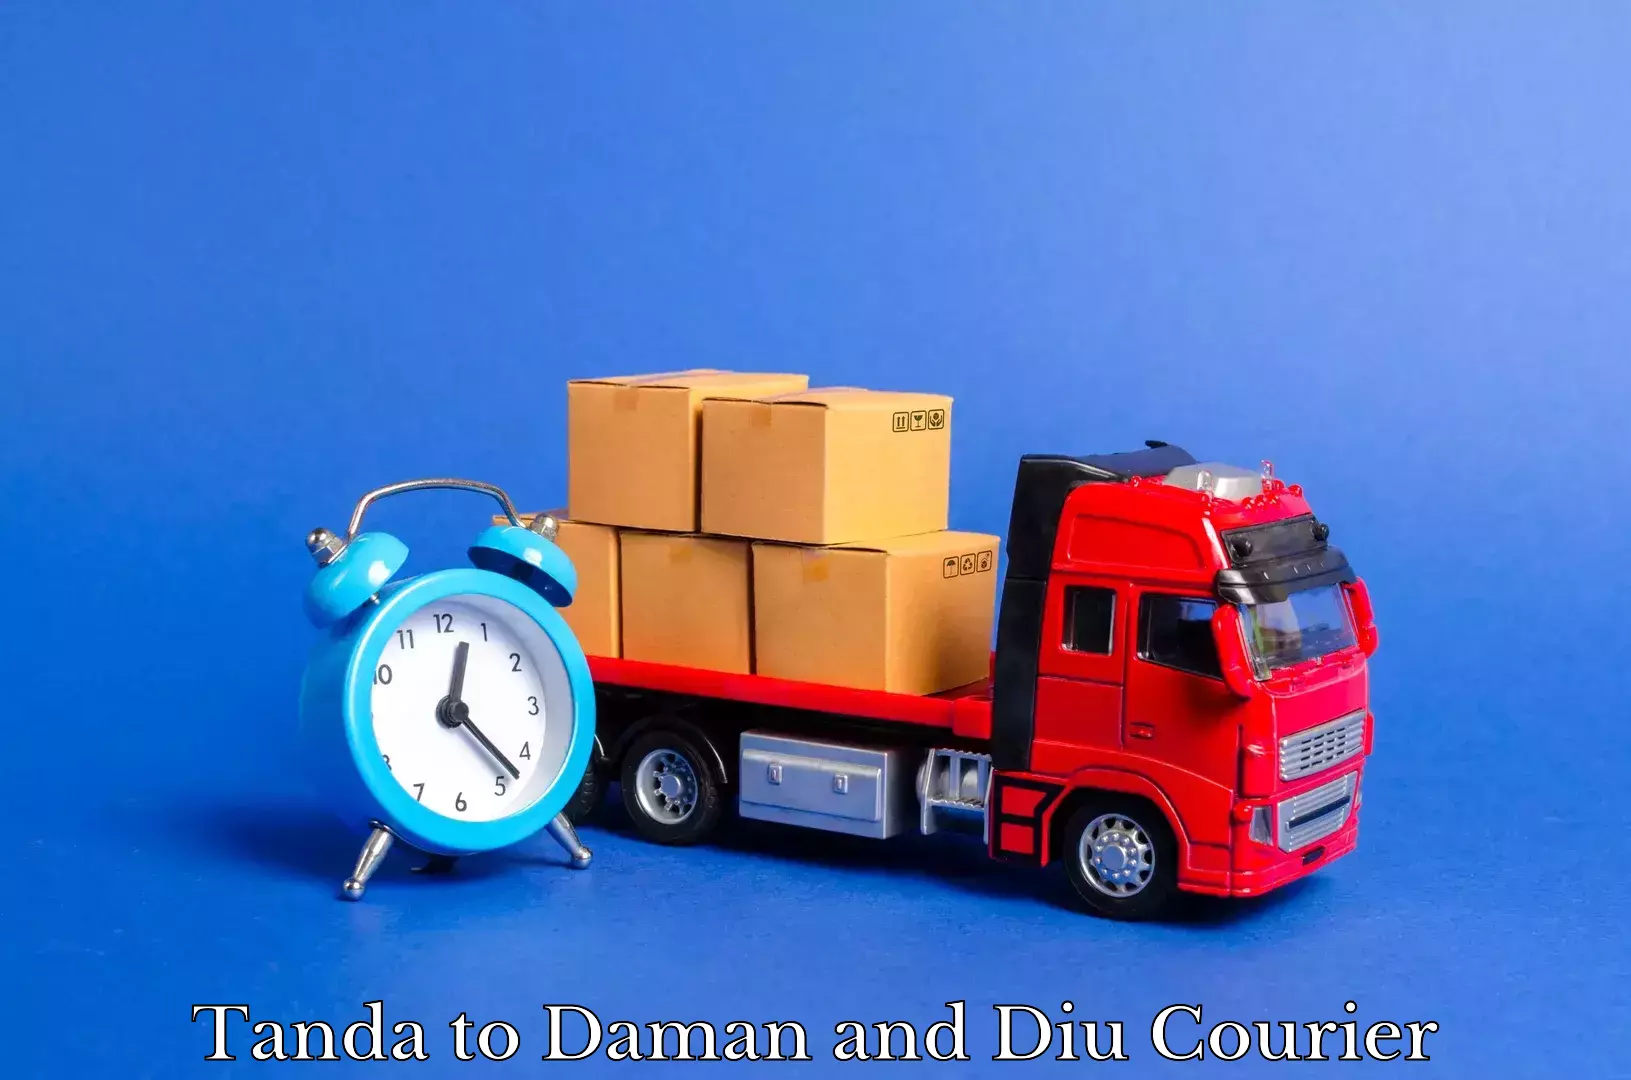 Expert goods movers Tanda to Daman and Diu